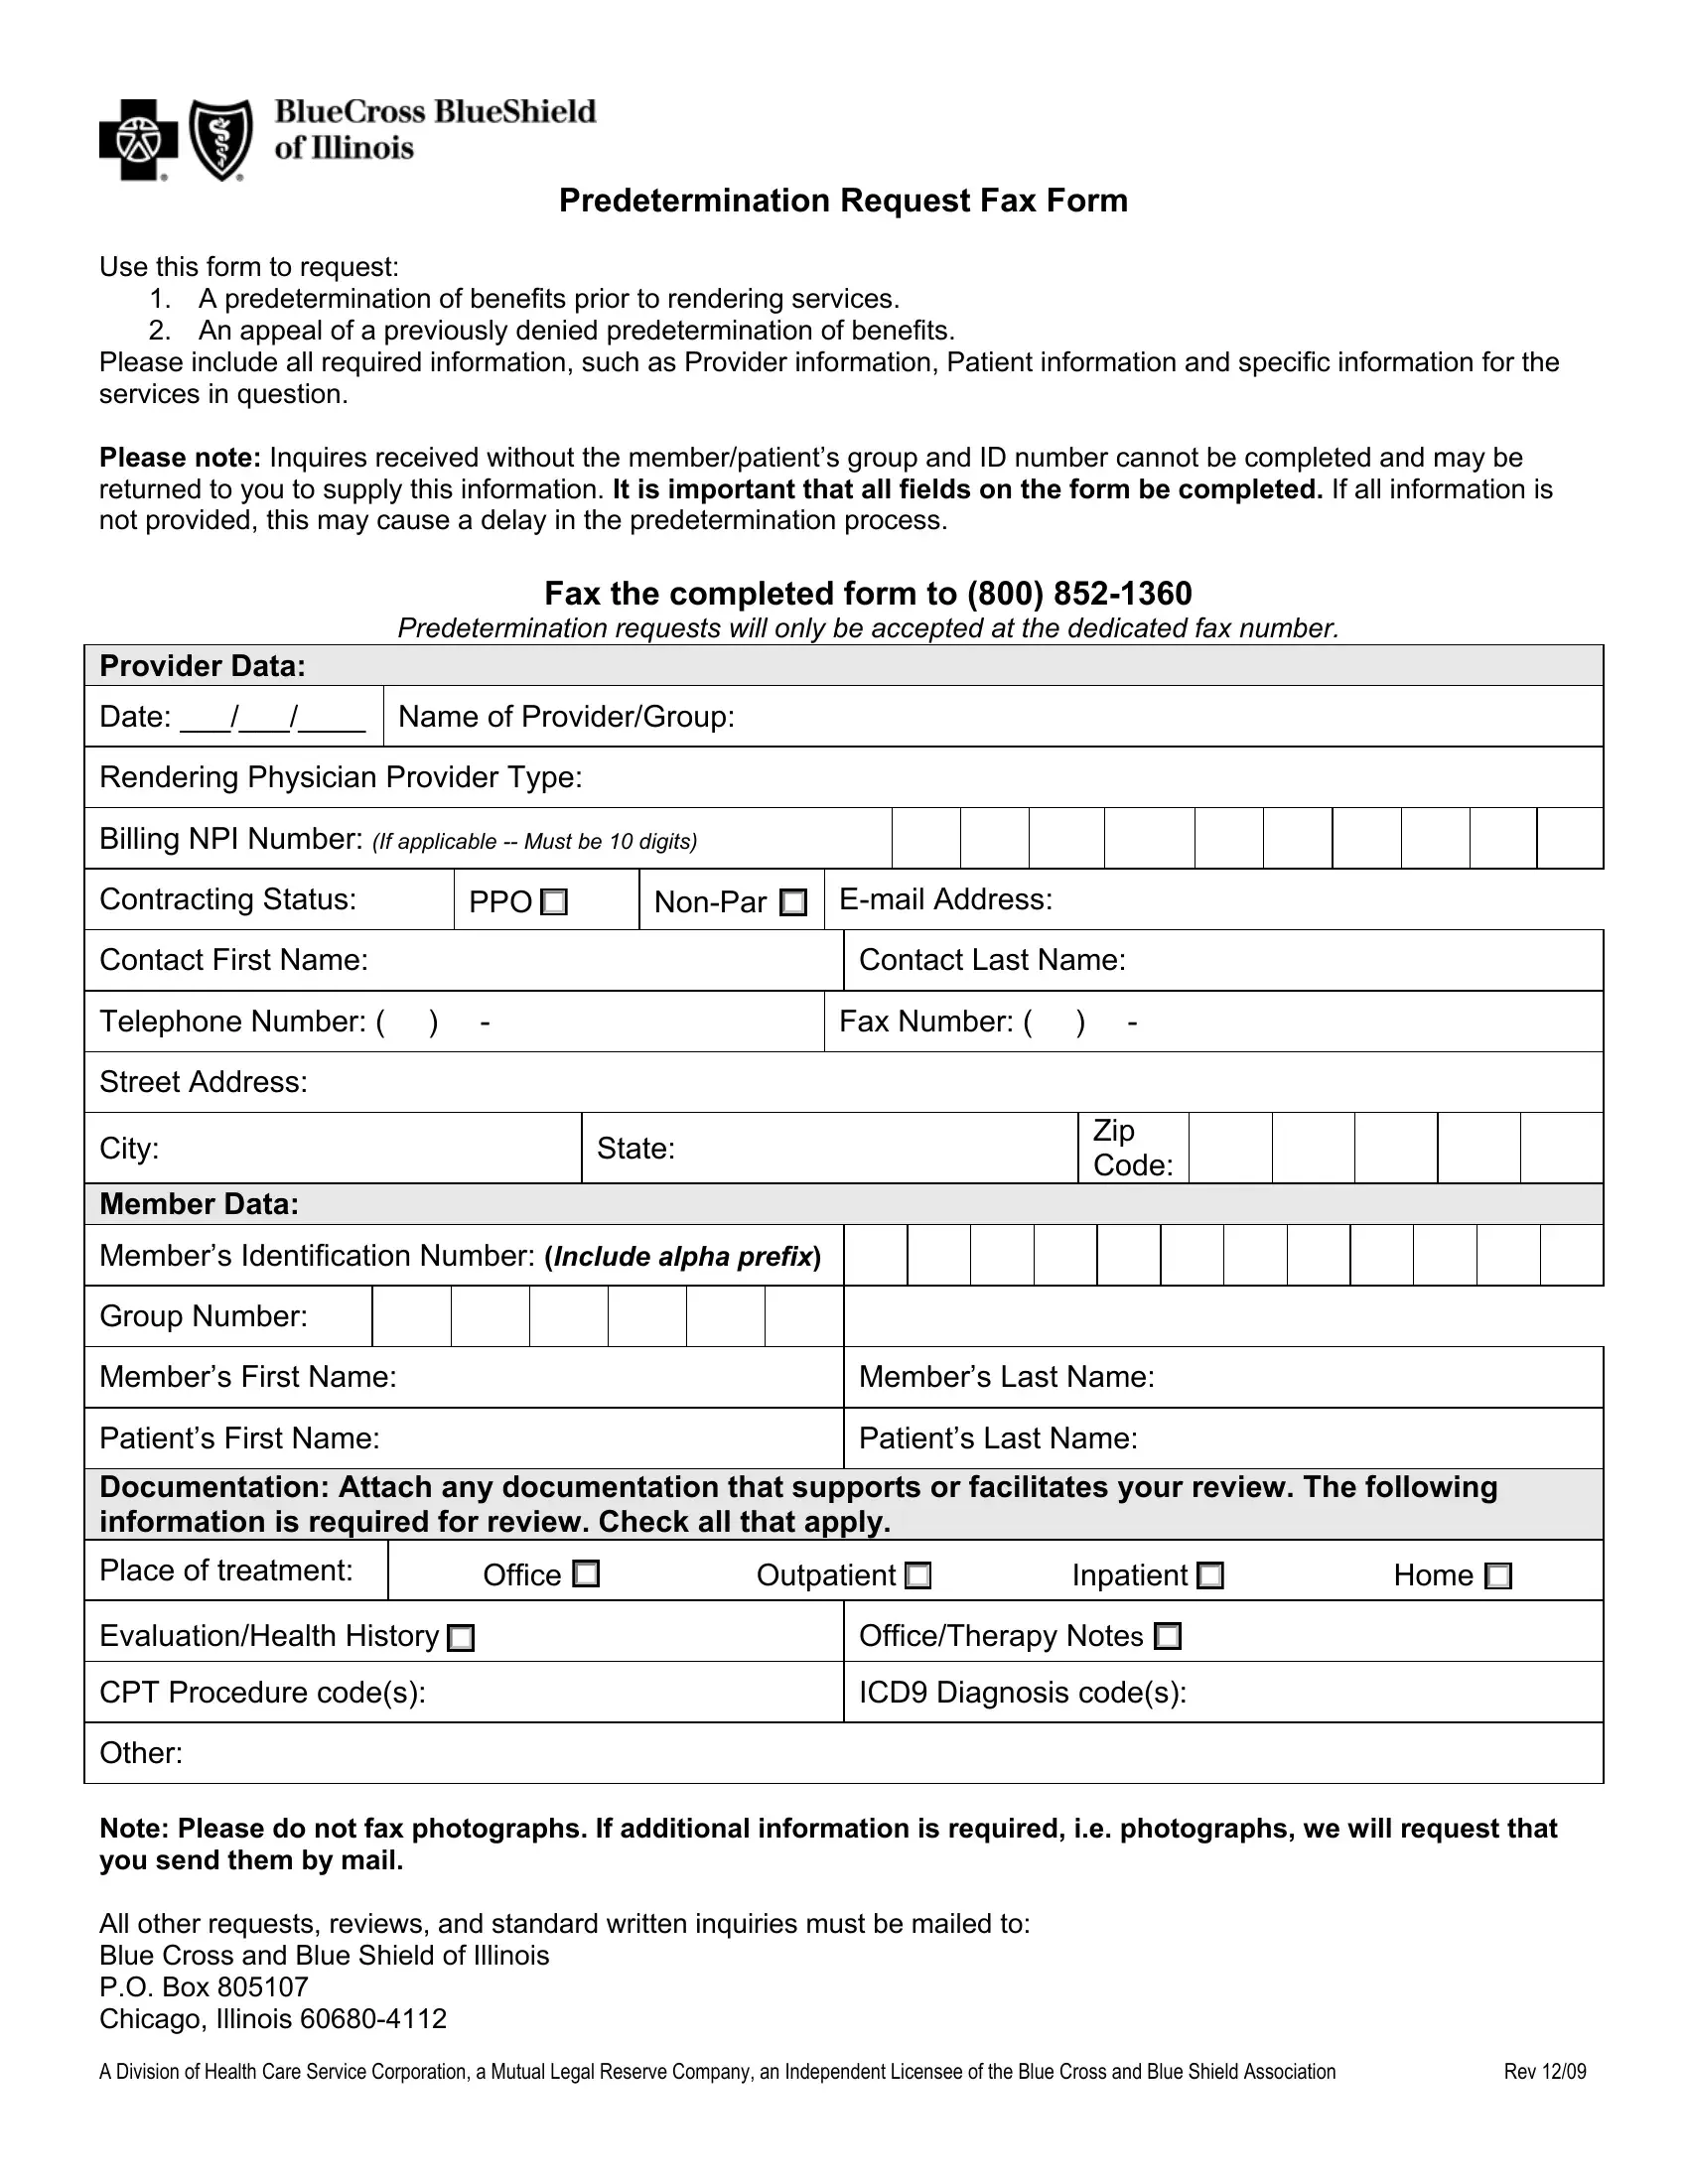 Bcbstx Federal Predetermination Form